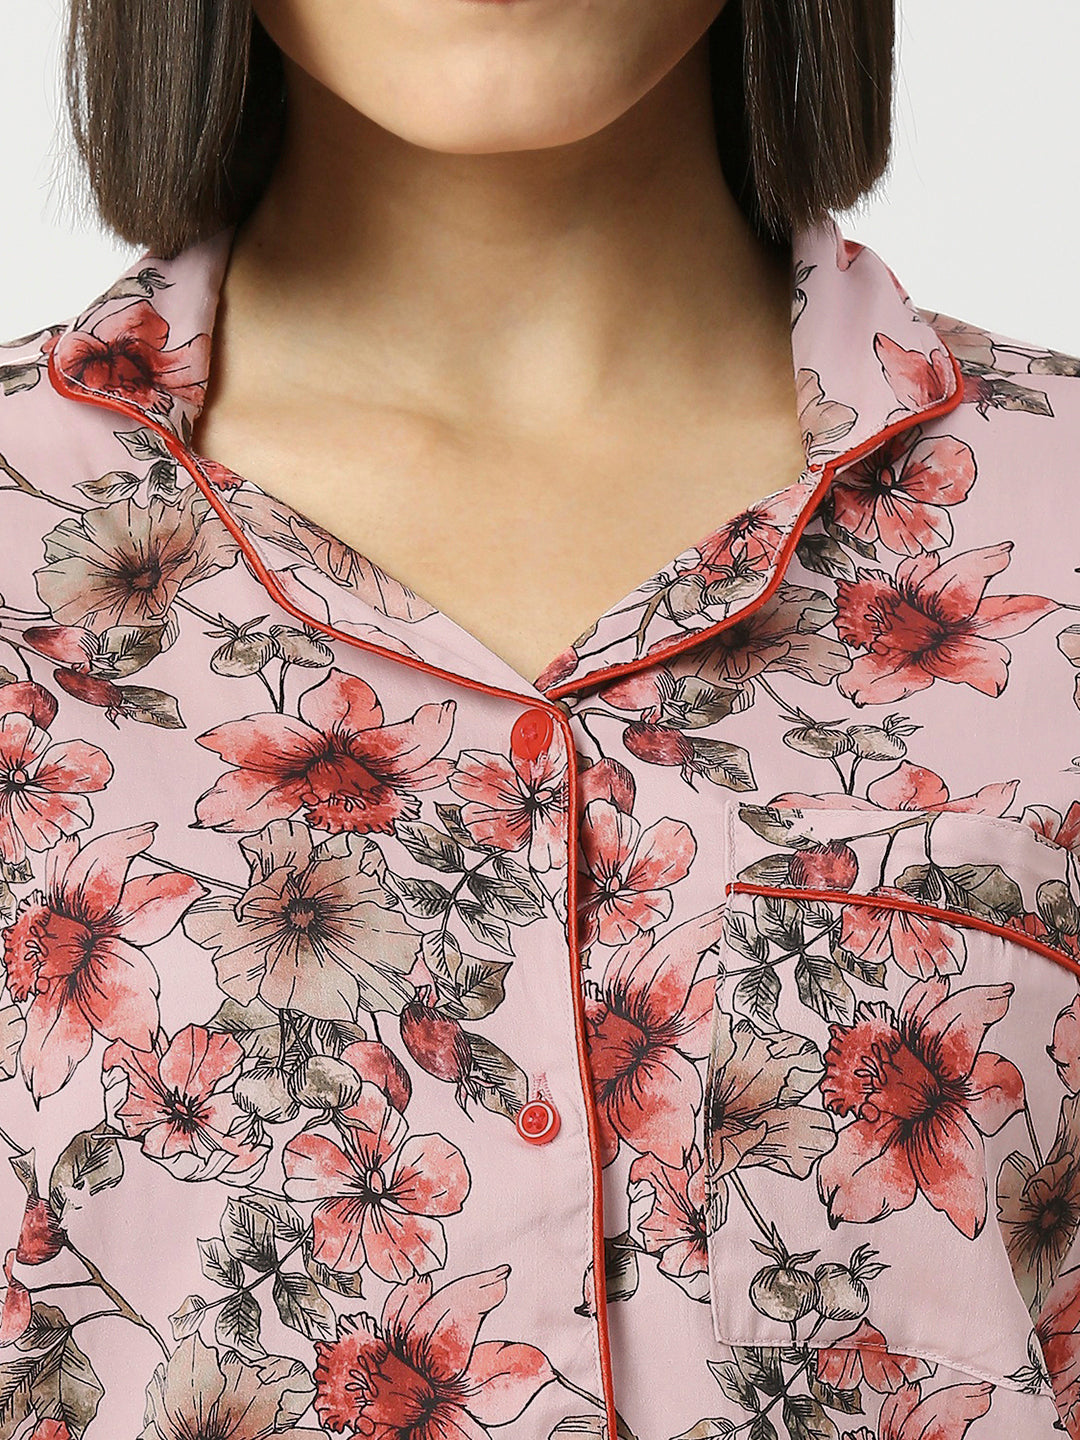 Floral Dreams Button Down Pj Set - Pure Cotton Pj Set with Notched Collar